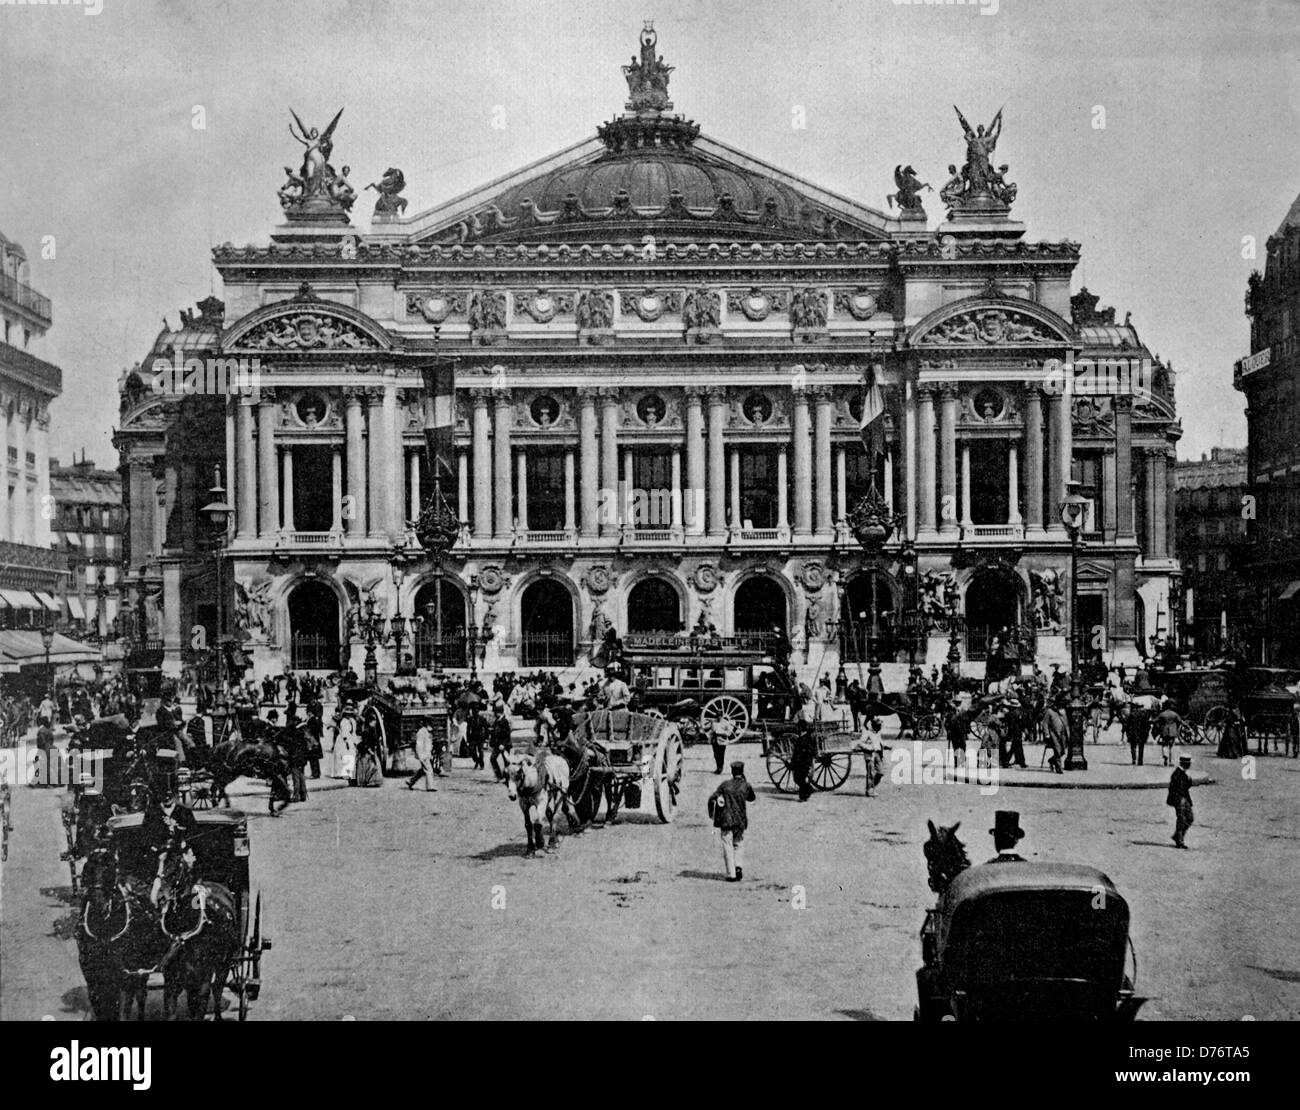 Une des premières photographies d'Autotype de l'Opéra de Paris, France, vers 1880 Banque D'Images